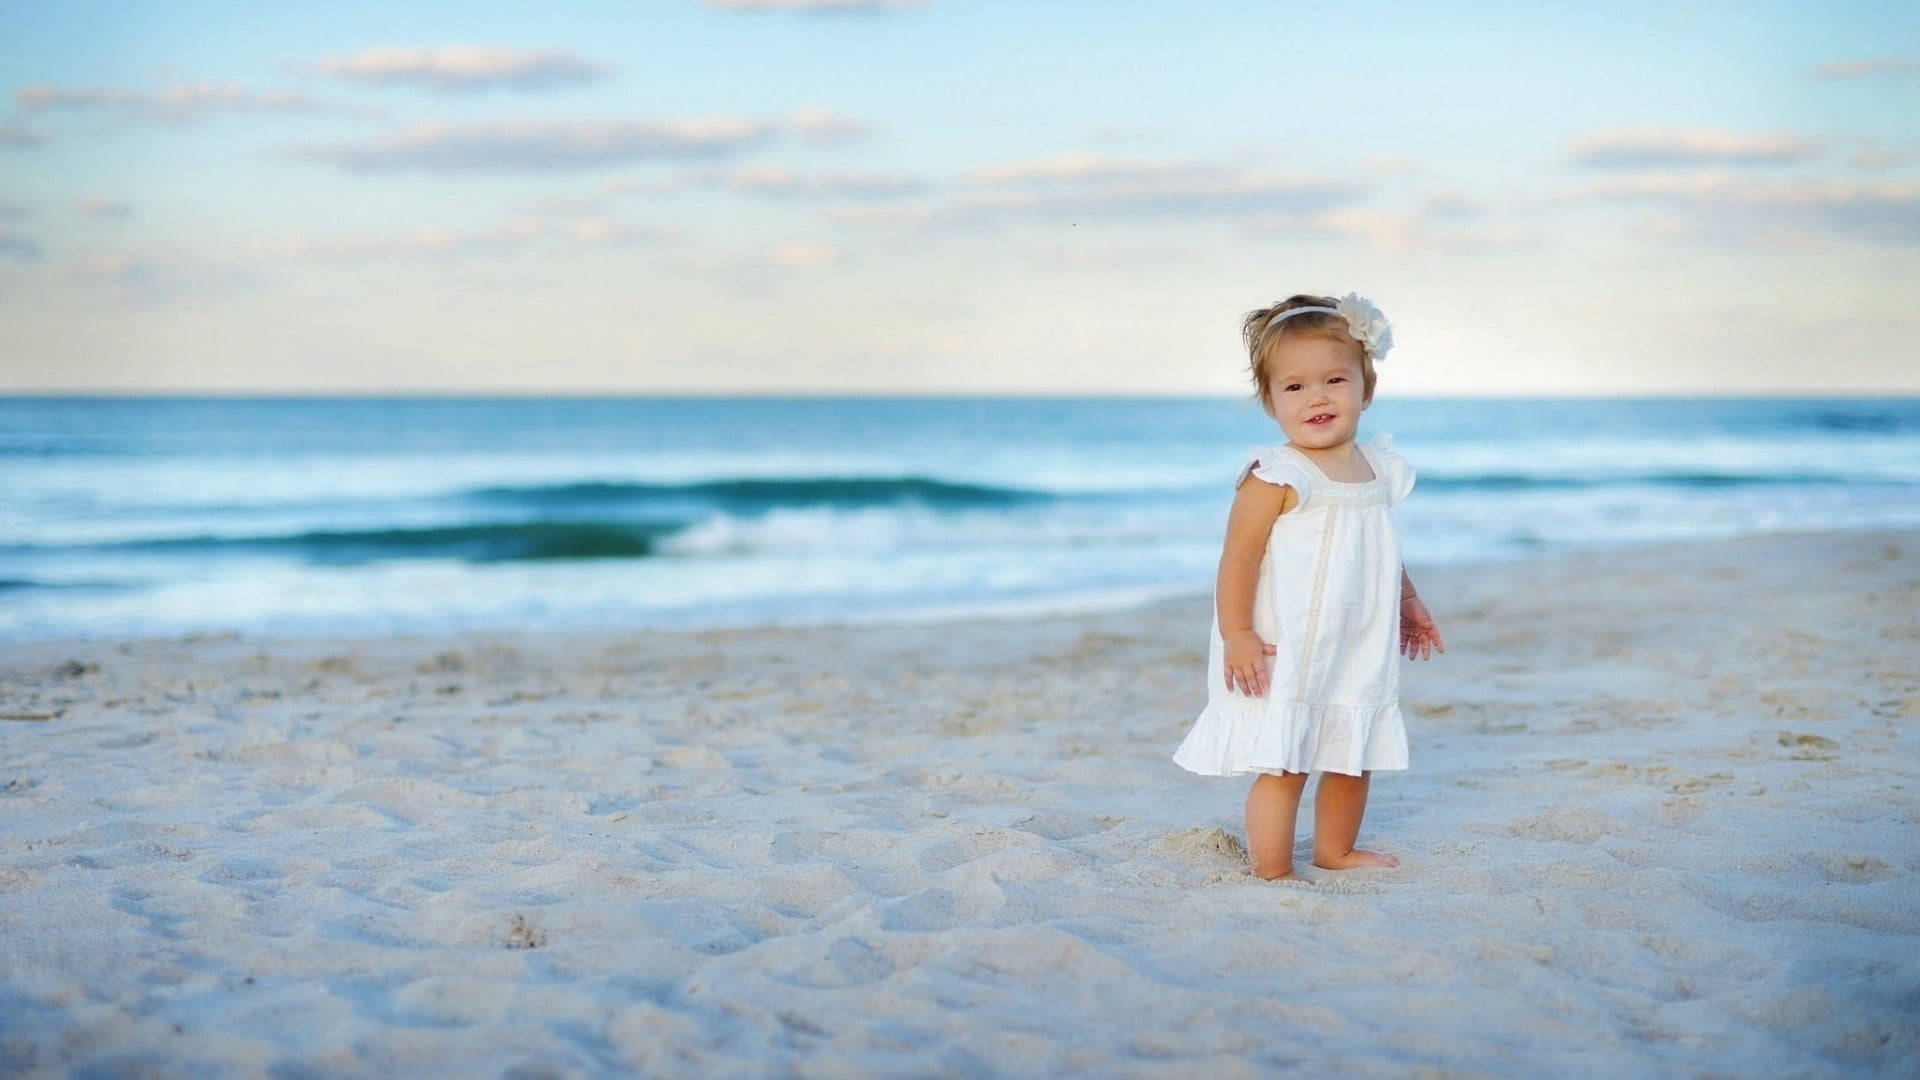 Baby Beach Girl In White Dress Wallpaper